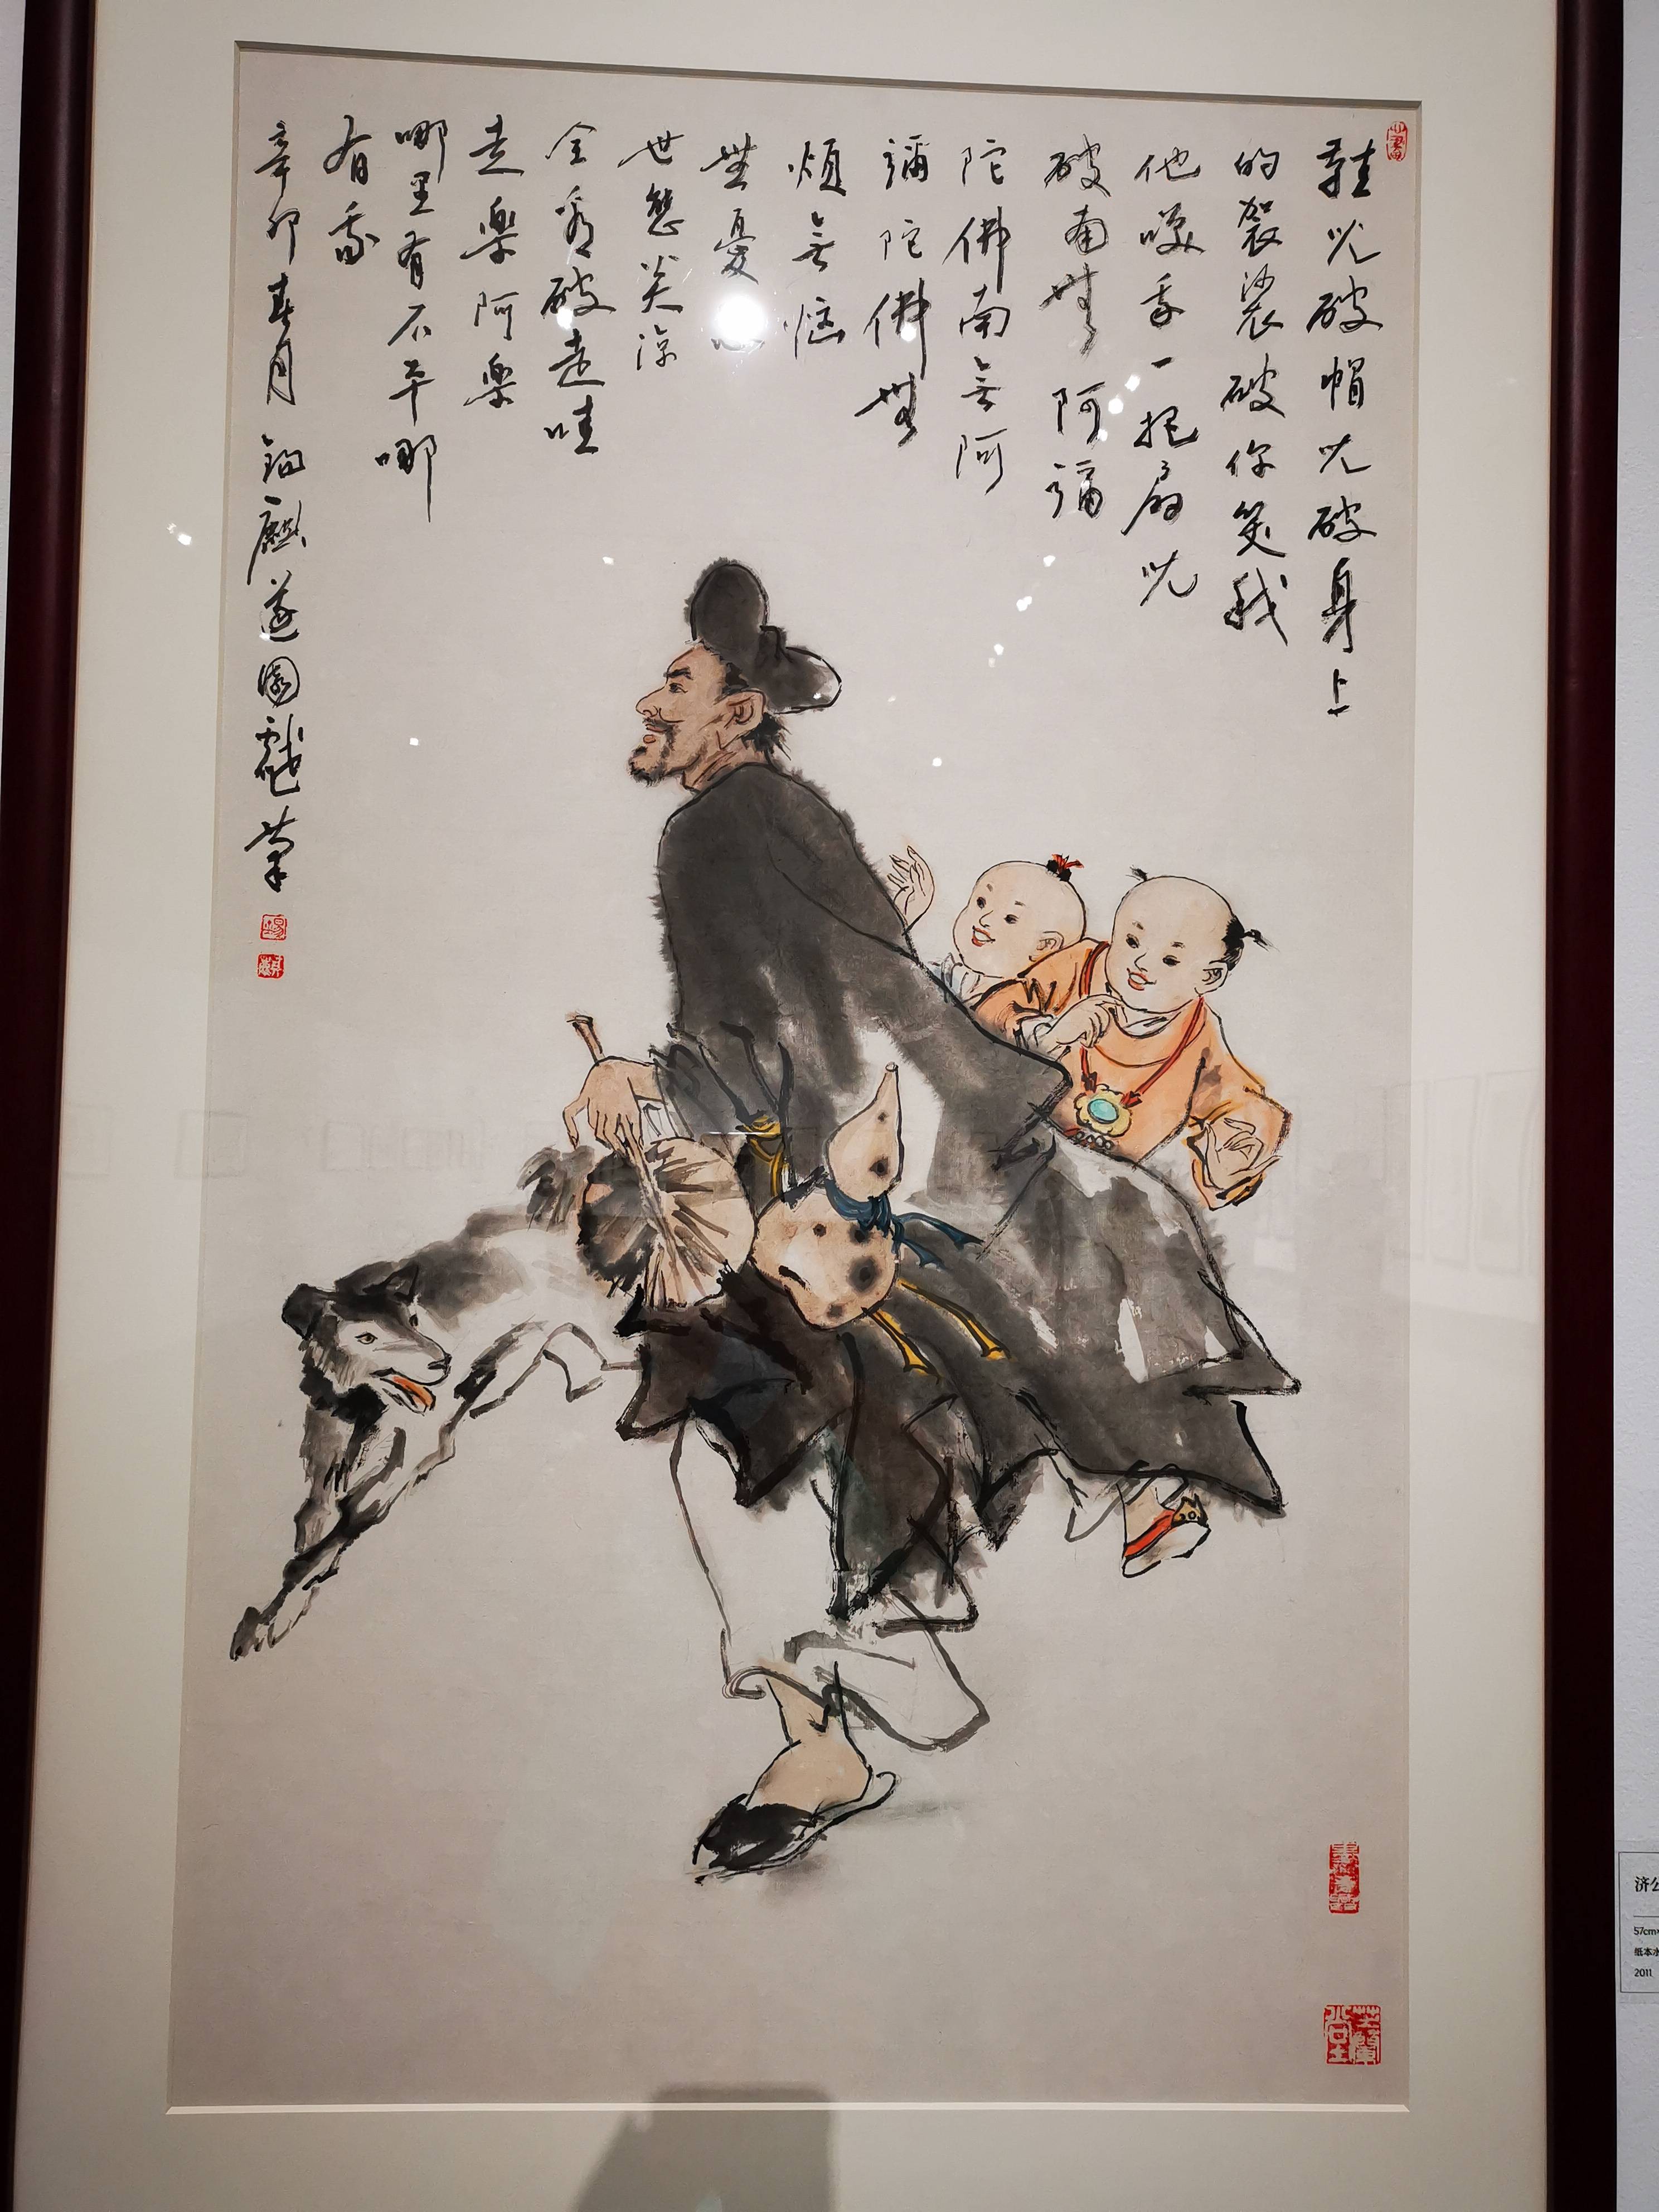 清逸古朴雅静,王锡麒中国画展在苏州美术馆举行